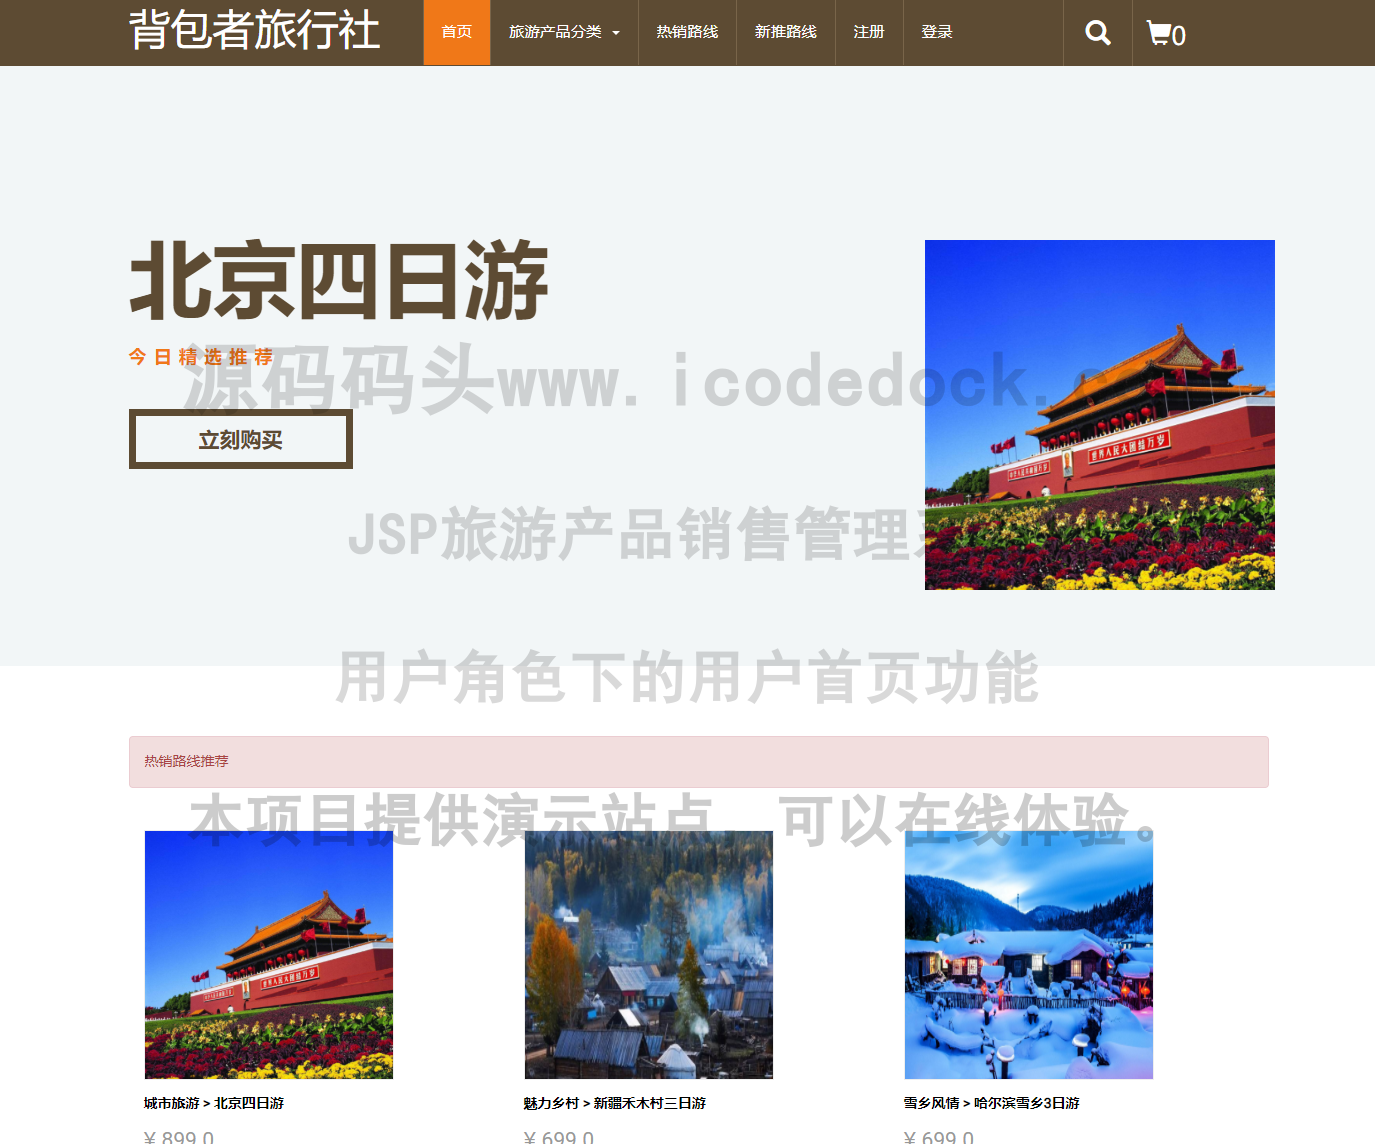 源码码头-JSP旅游产品销售管理系统-用户角色-用户首页